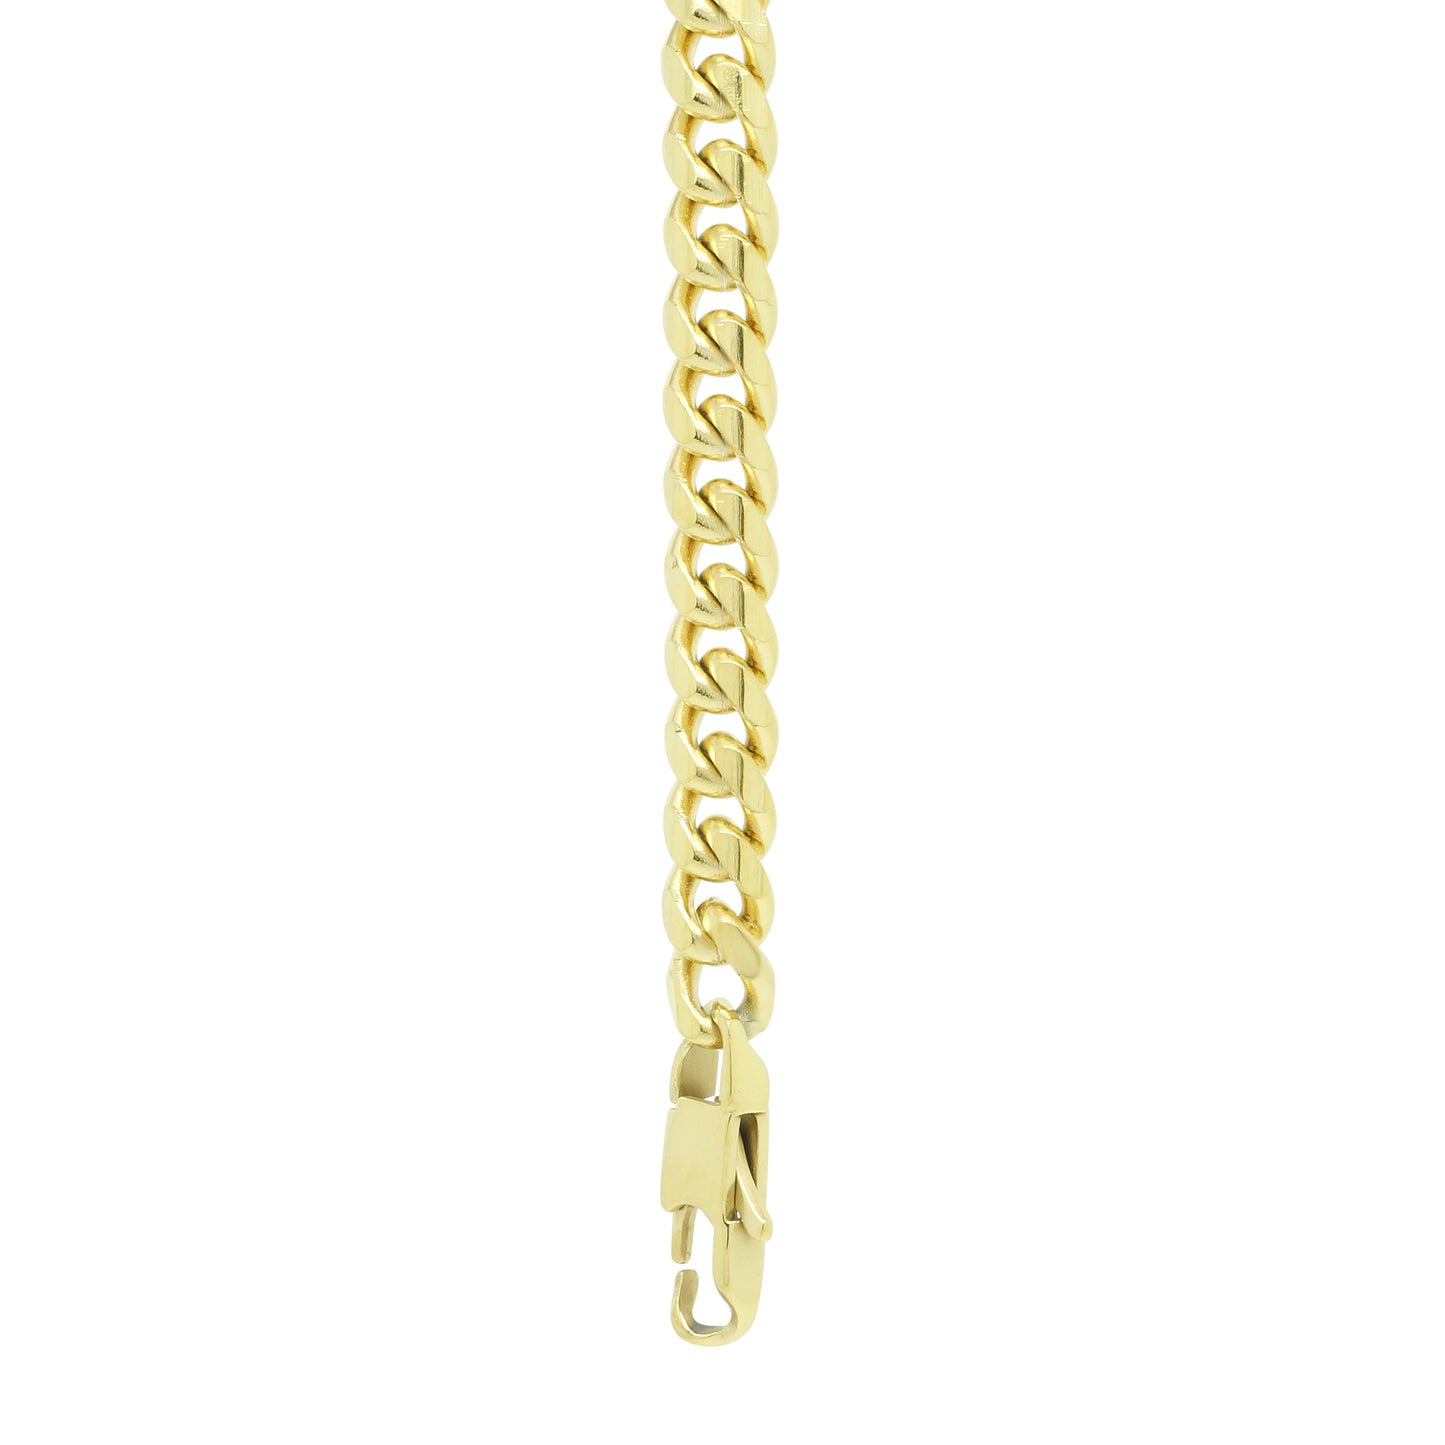 12mm Chain Bracelet - Gold